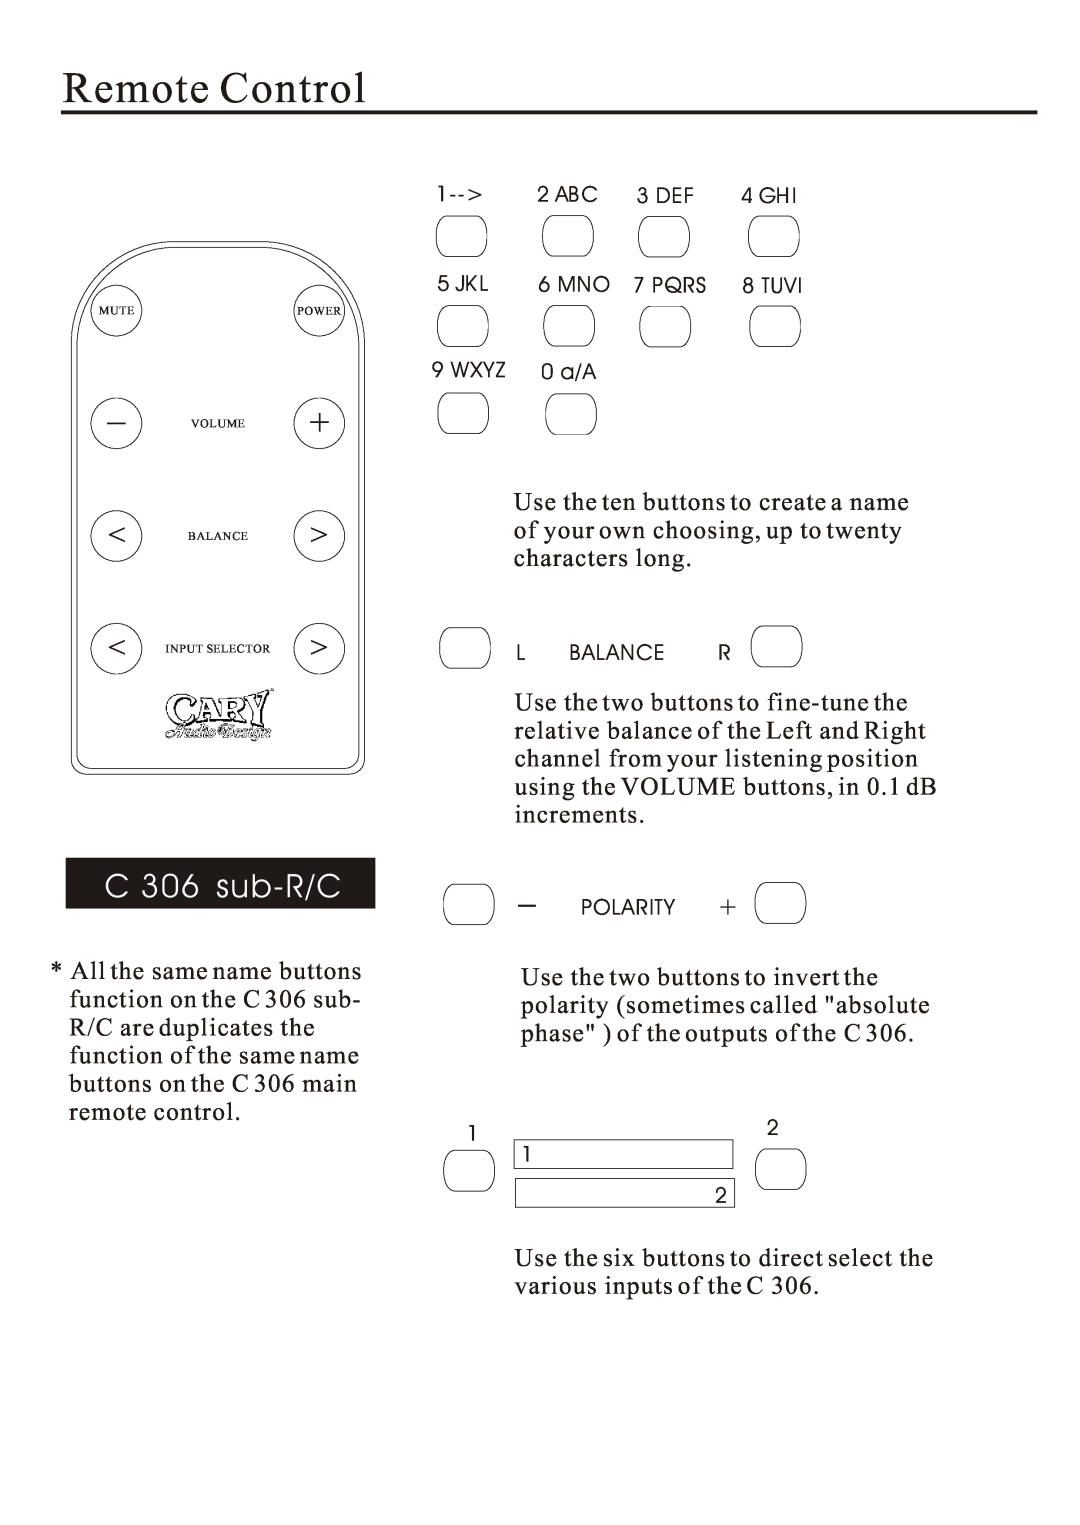 Cary Audio Design C 306 owner manual C306 sub-R/C, Remote Control 